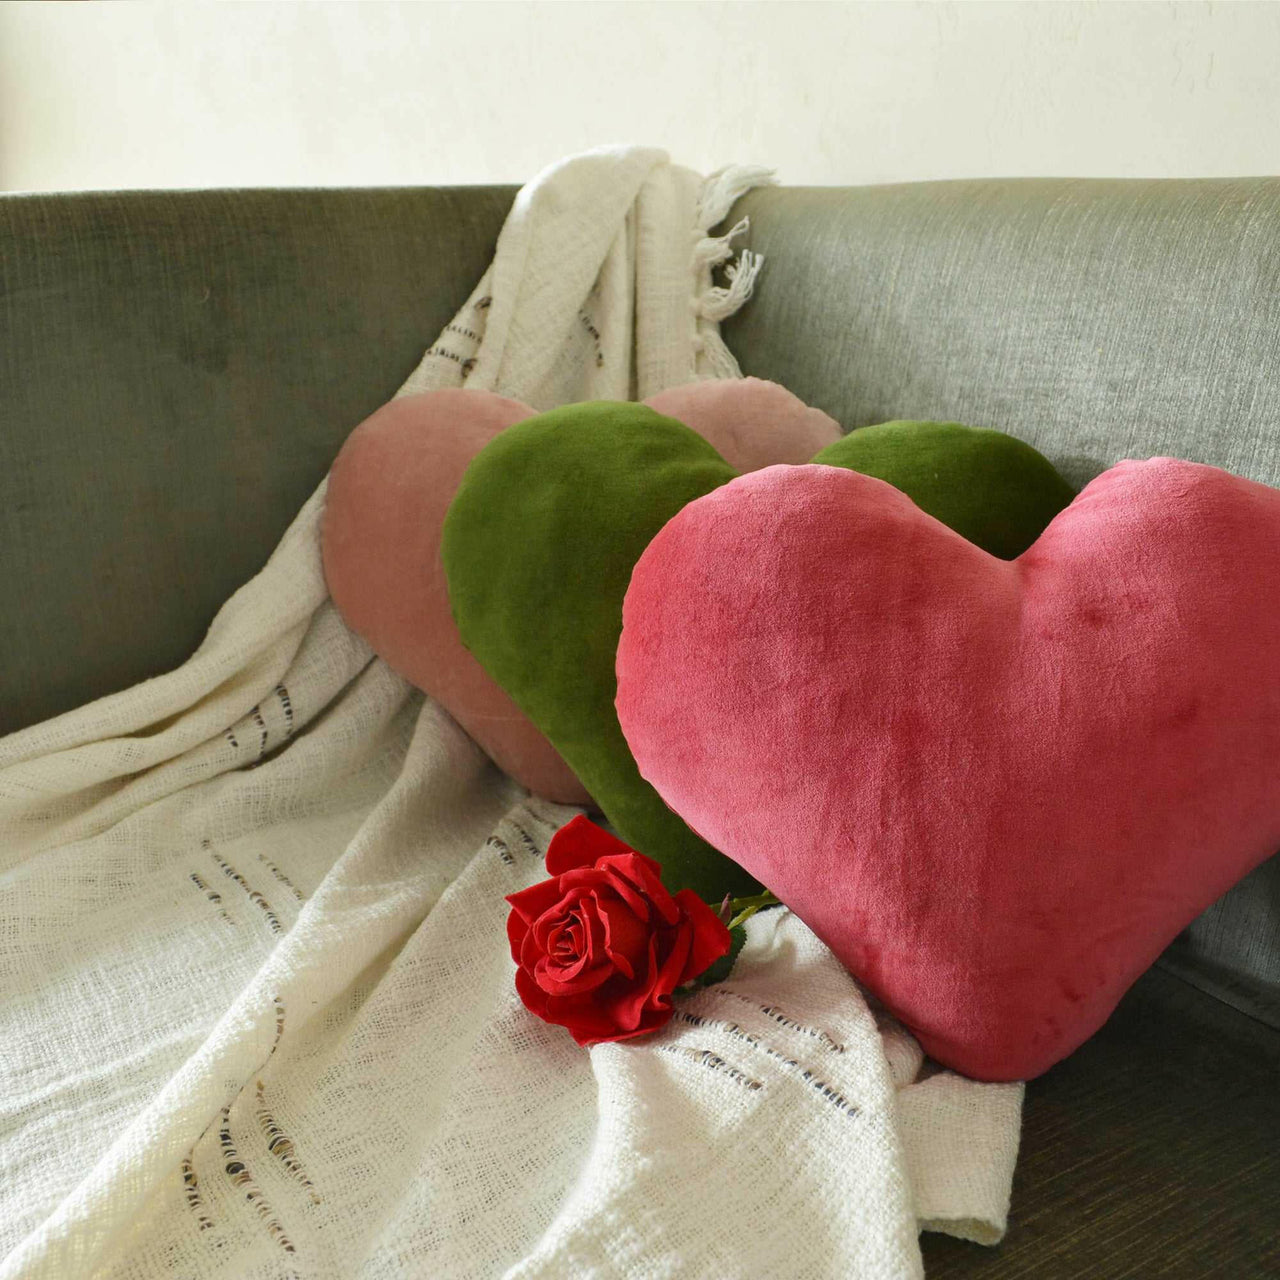 Velvet heart Shaped Cushion